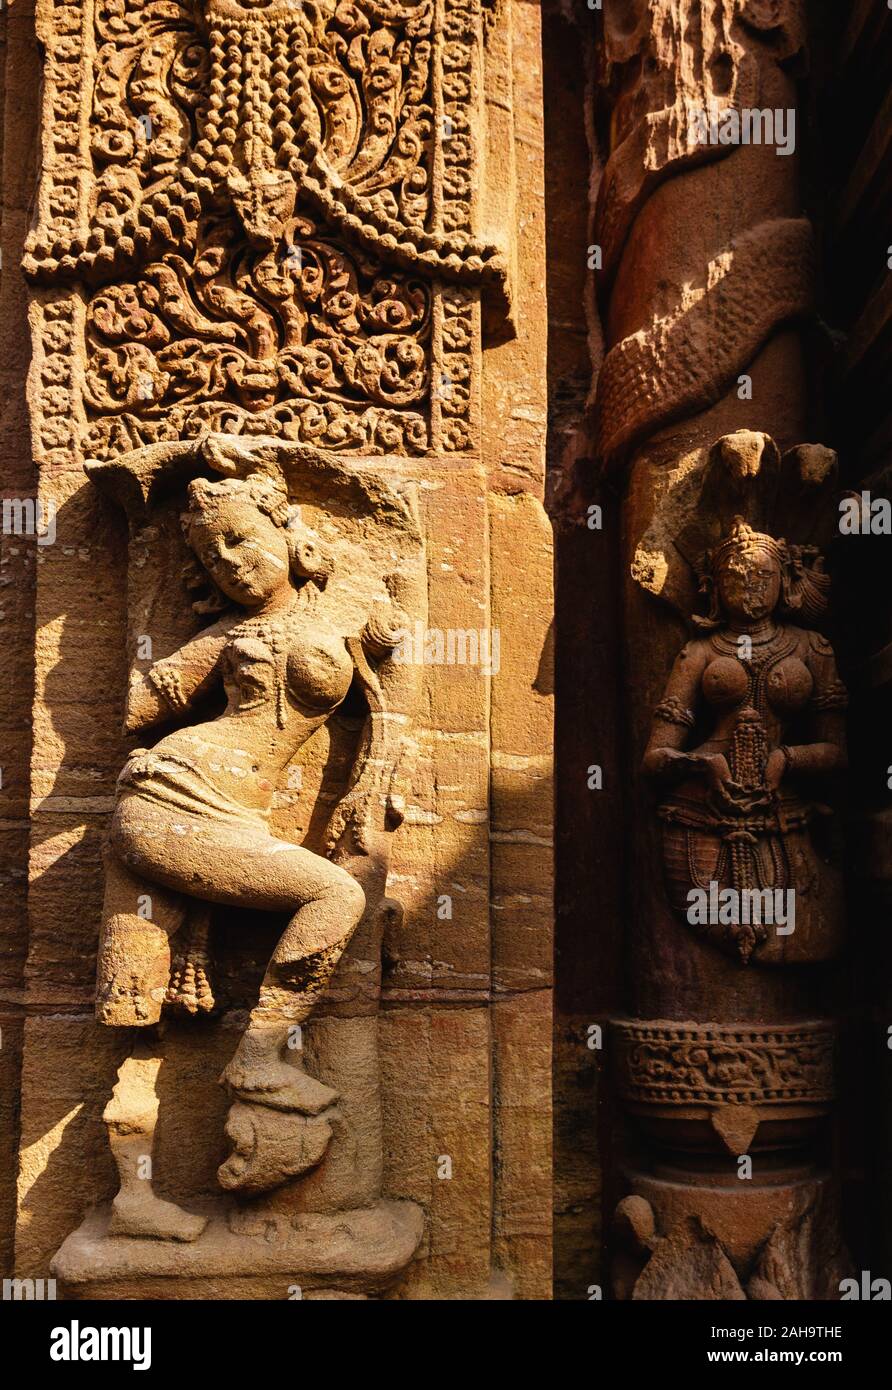 Tallado ornamentado y desteñido de una figurilla en las paredes del antiguo templo Mukteshwar del siglo X en la ciudad de Bhubaneshwar en Orissa, India. Foto de stock